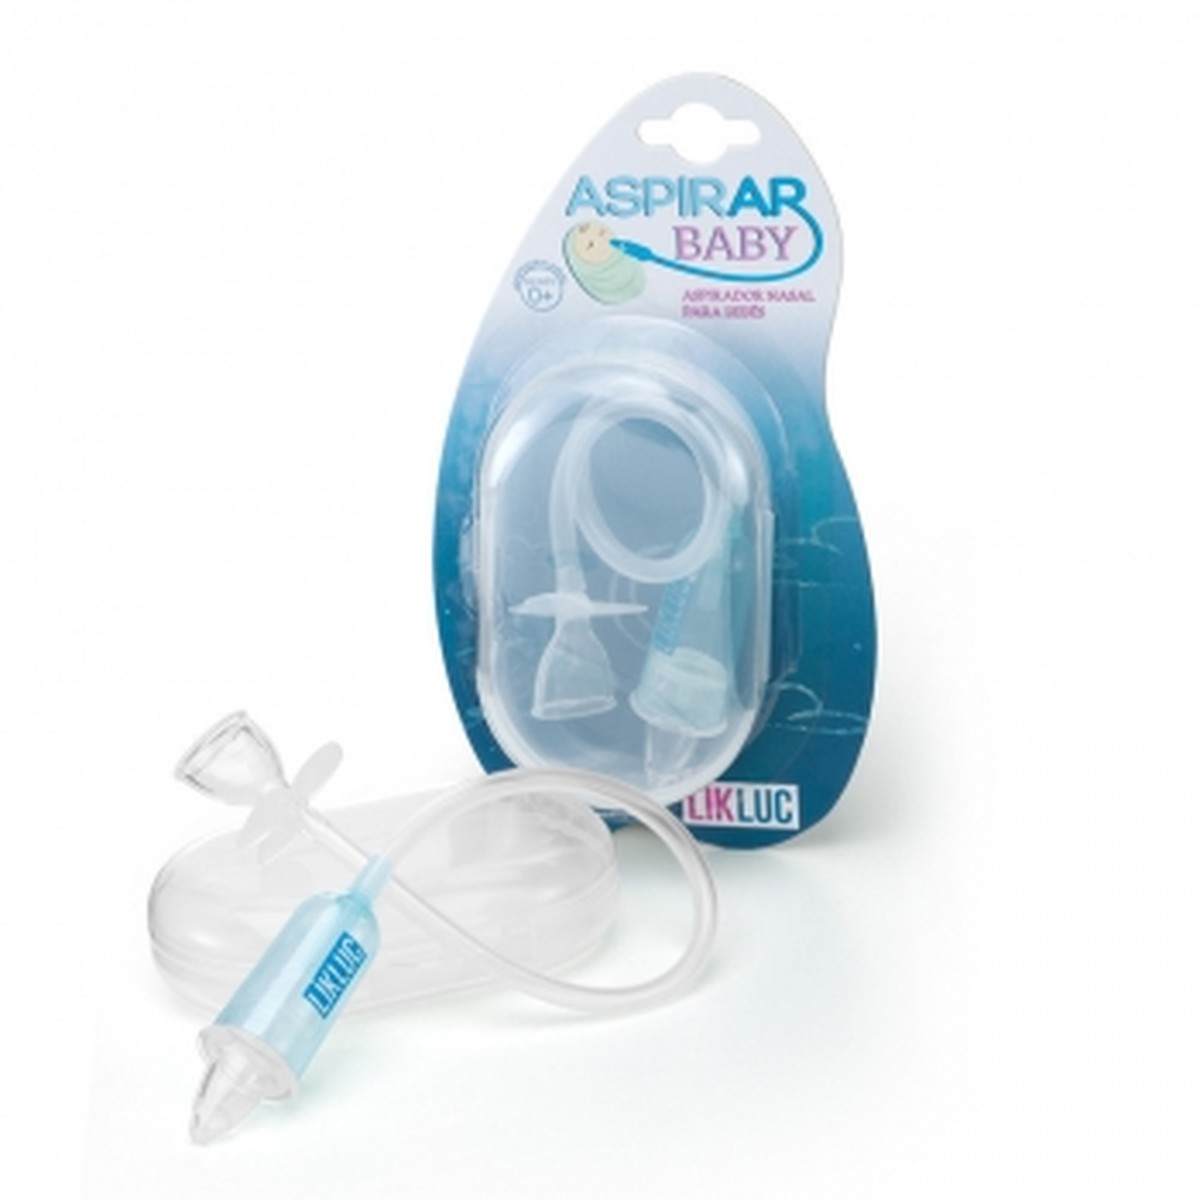 Foto do produto Aspirador Nasal com estojo plástico para transporte Aspirarbaby